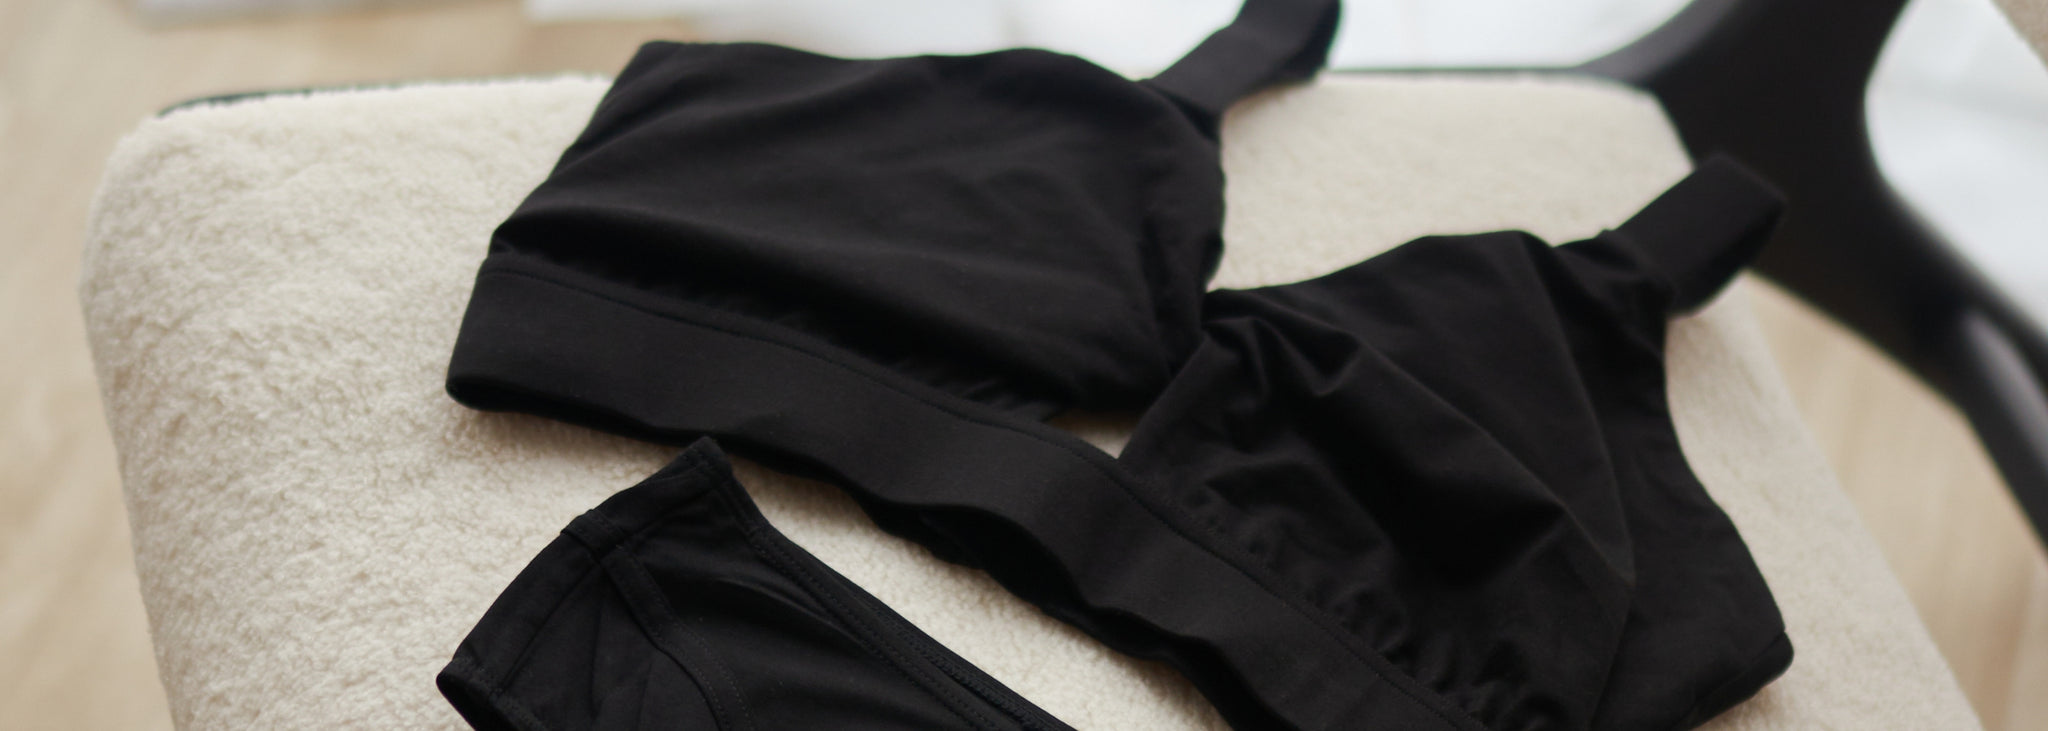 ASOS DESIGN Fuller Bust Reign premium velvet mesh bra in black